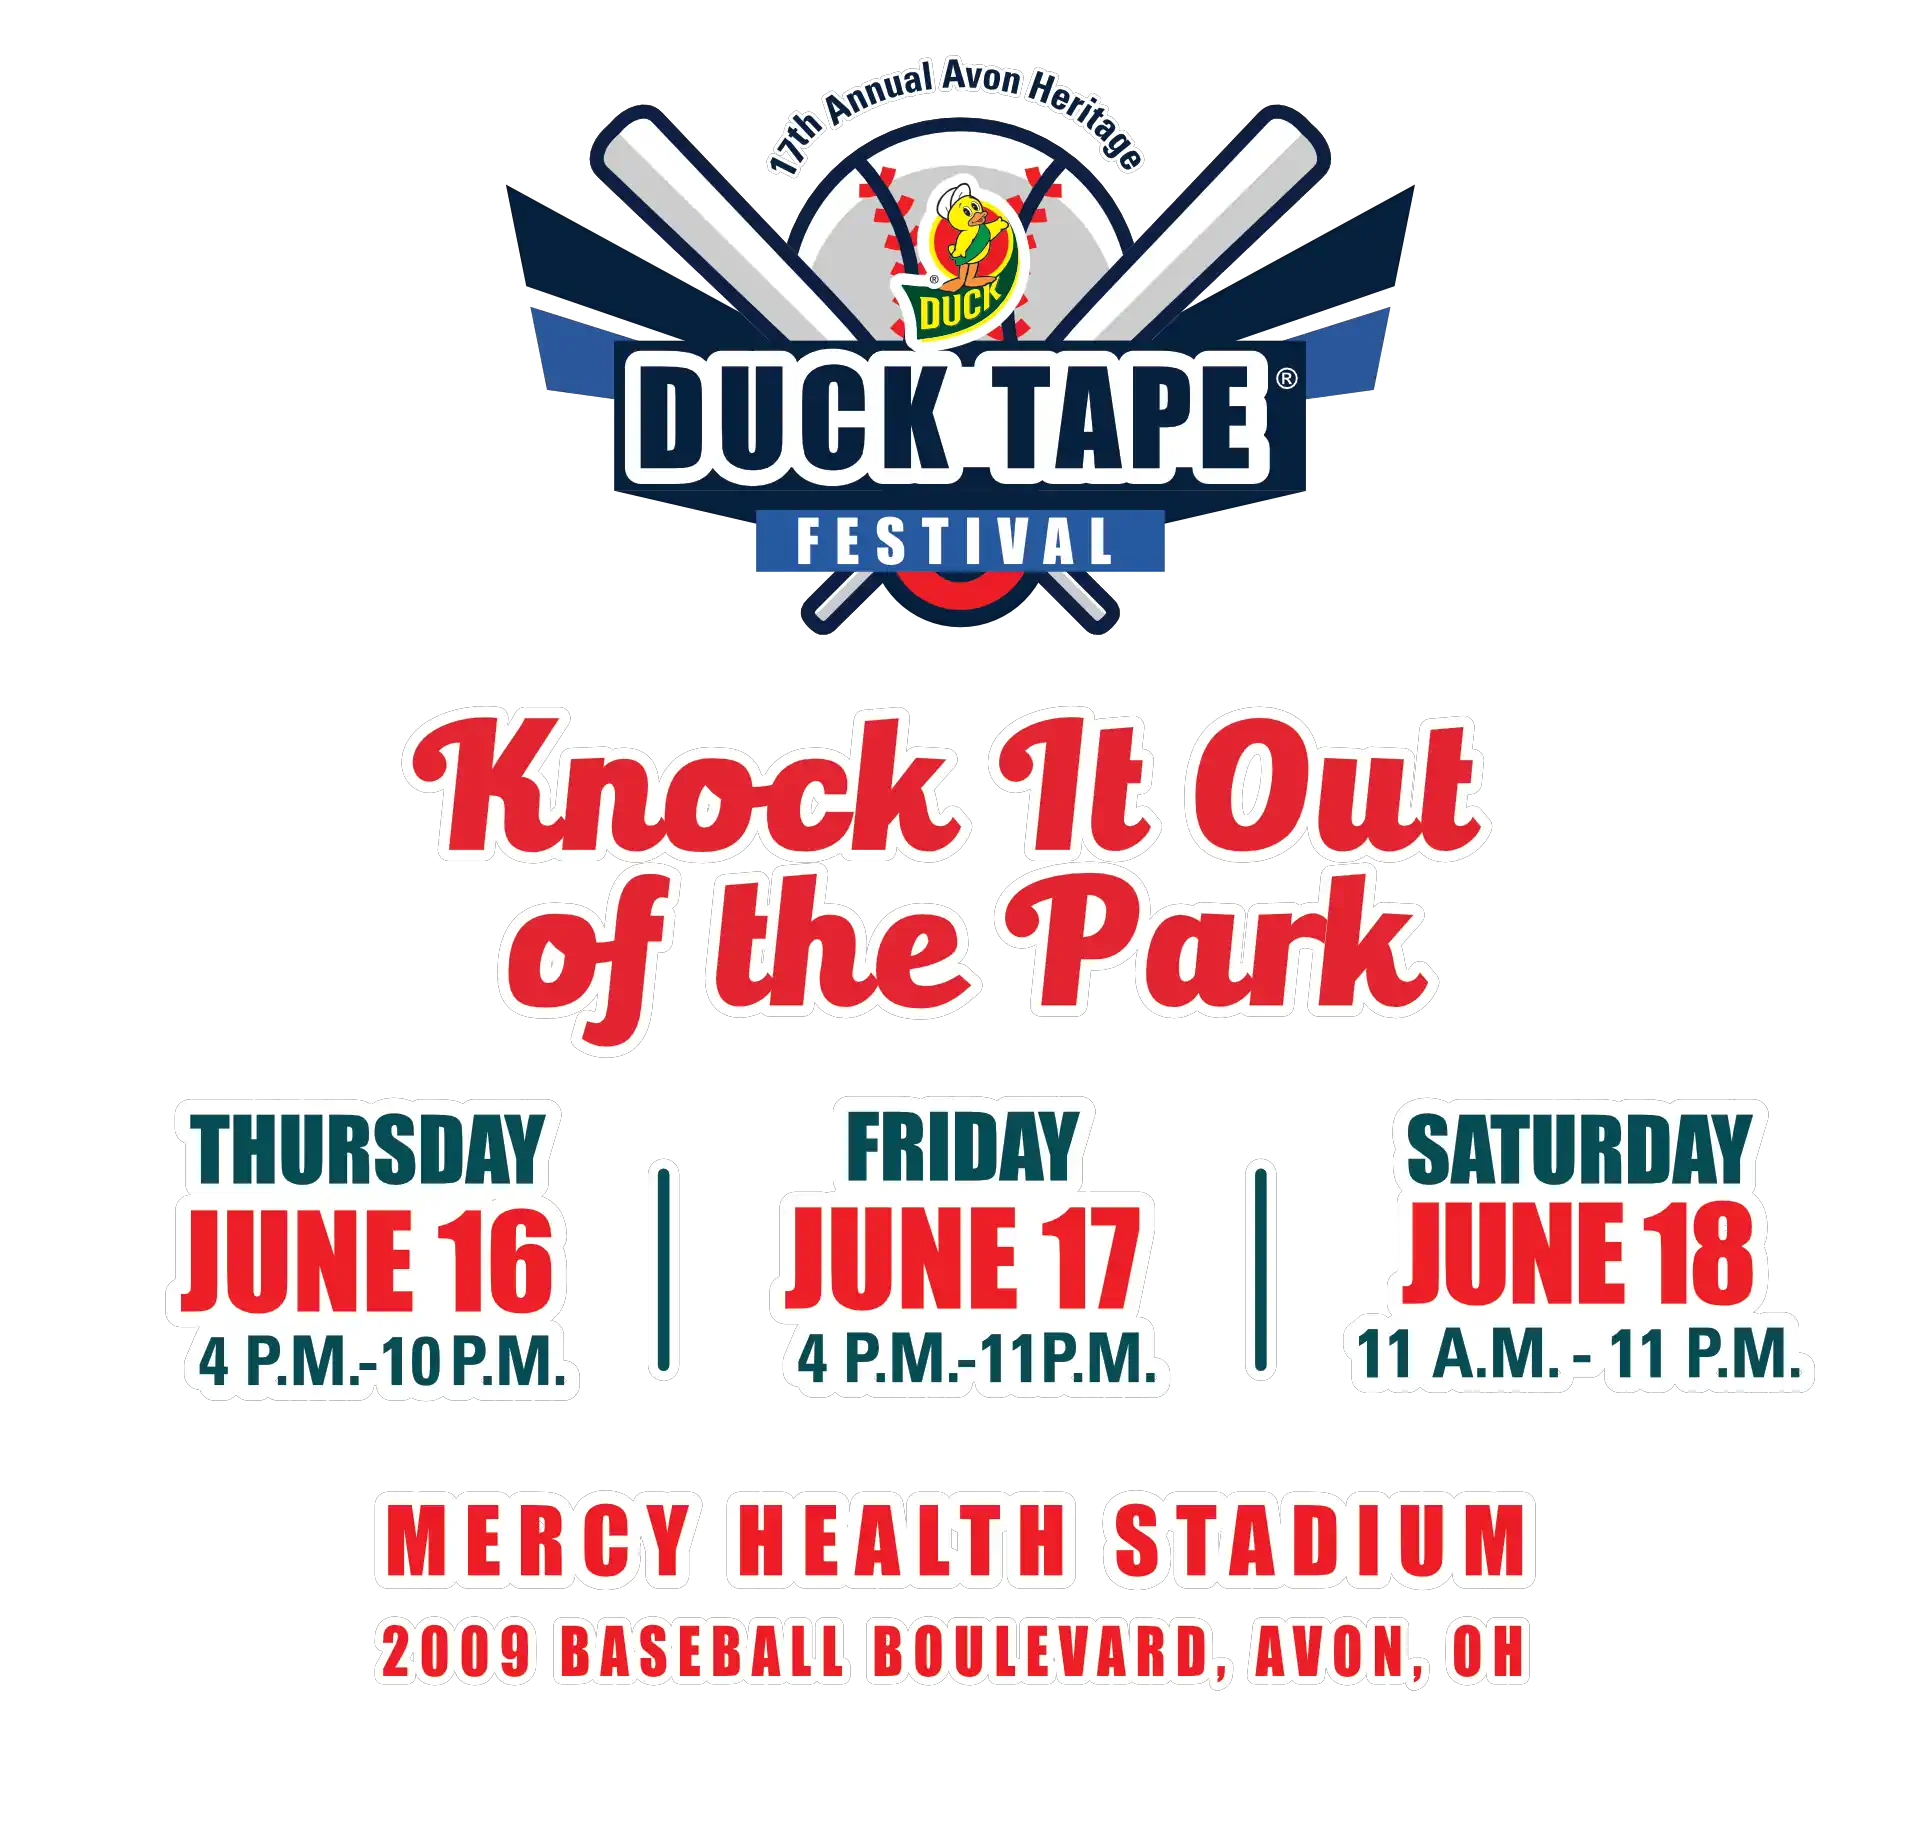 2022 Duck Tape Festival - Mercy Health Stadium - 2009 Baseball Boulevard, Avon, Oh